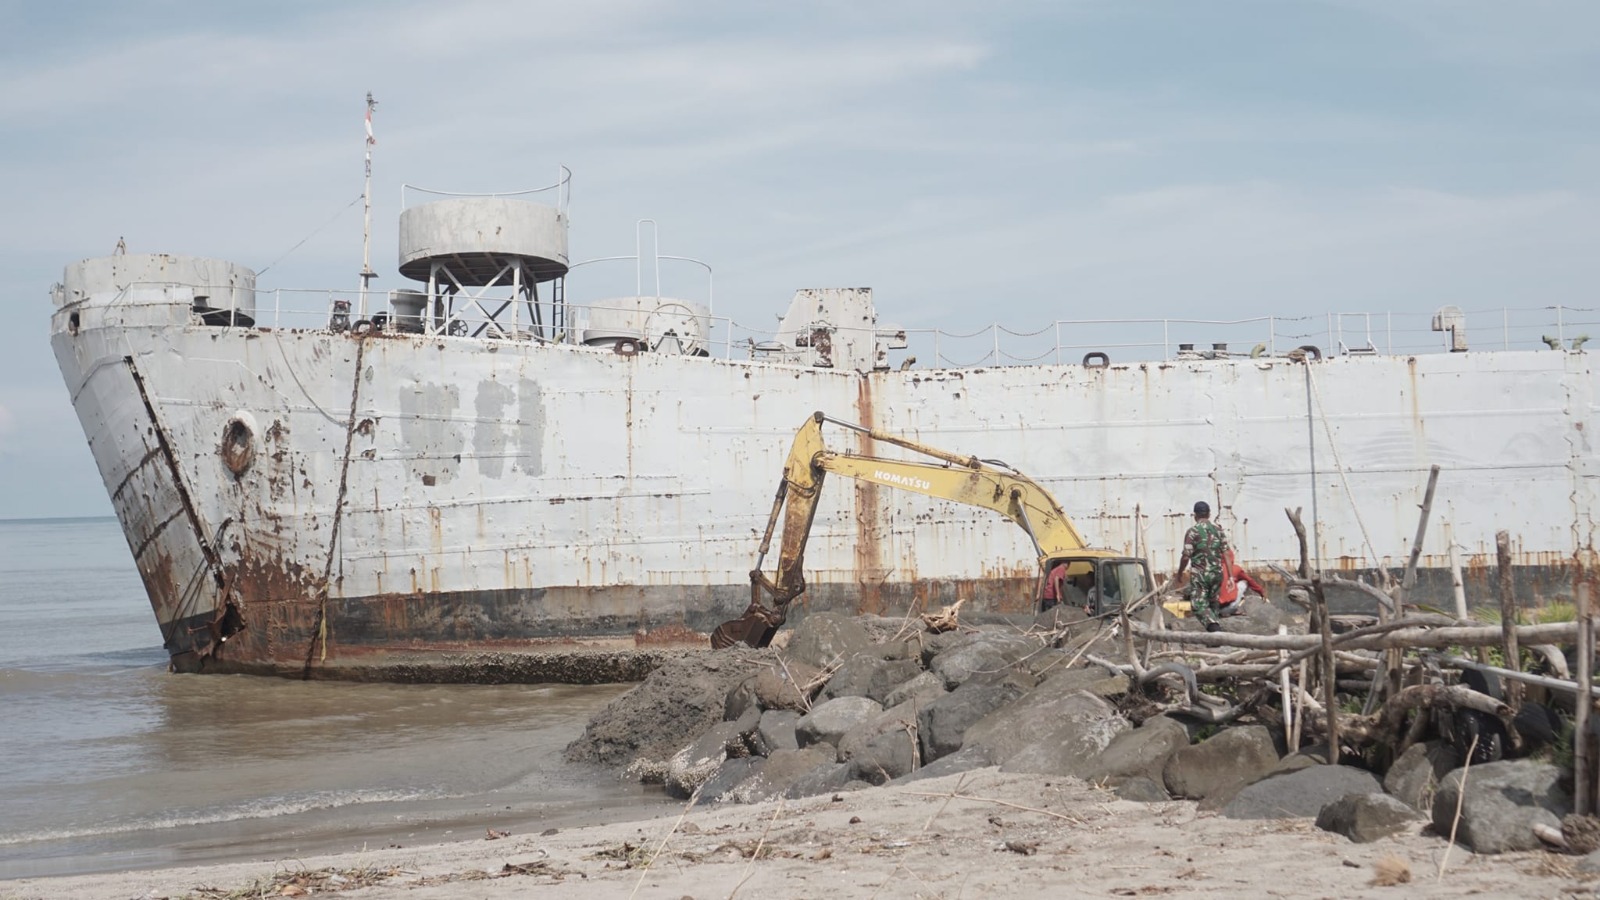 Proses Pembuatan Kanal untuk Menyelamatkan Bekas KRI Teluk Bone 511 Dimulai oleh Pemerintah Kota Pariaman